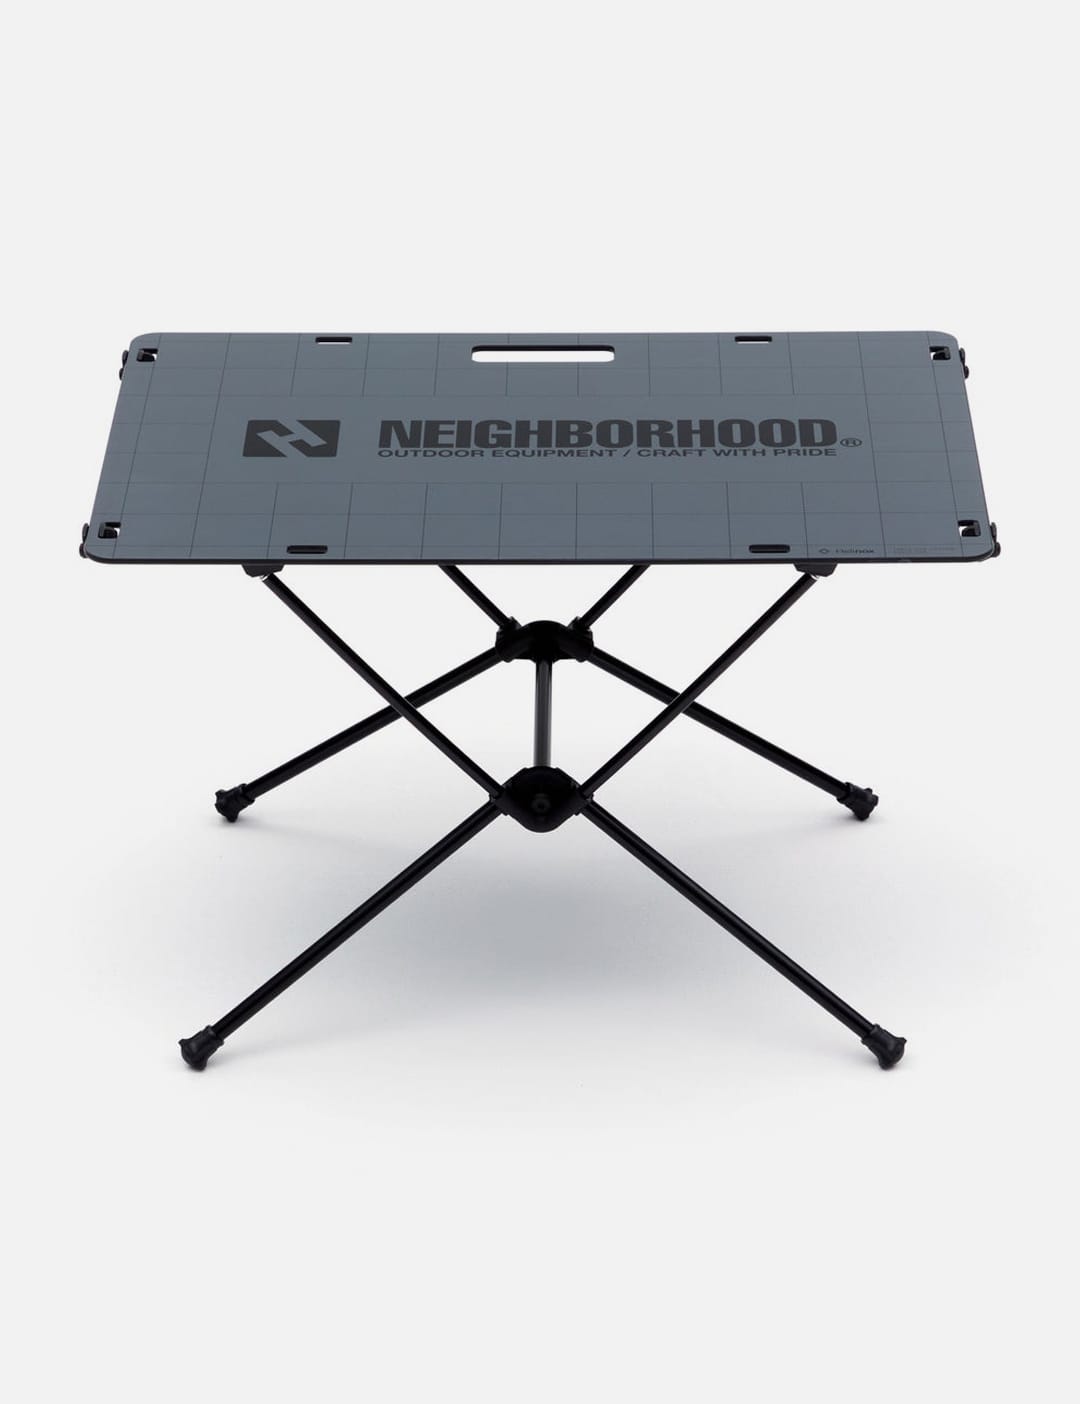 NEIGHBORHOOD - Neighborhood x Helinox Solid Top Table | HBX